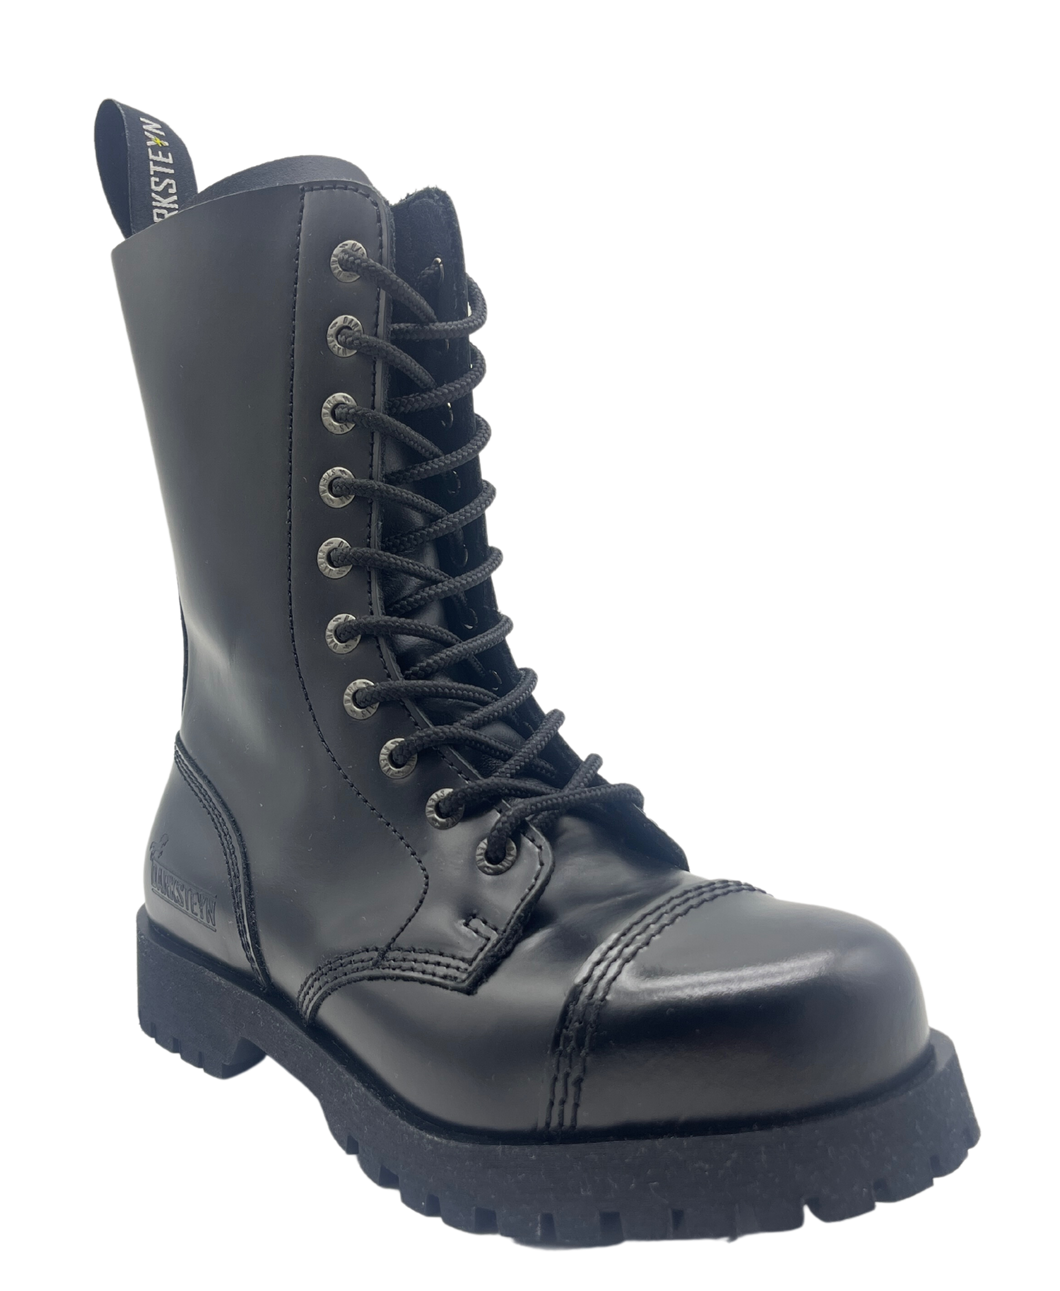 Darksteyn Stiefel Schuhe 10 Eye Ranger Premium Boots Black Springerstiefel